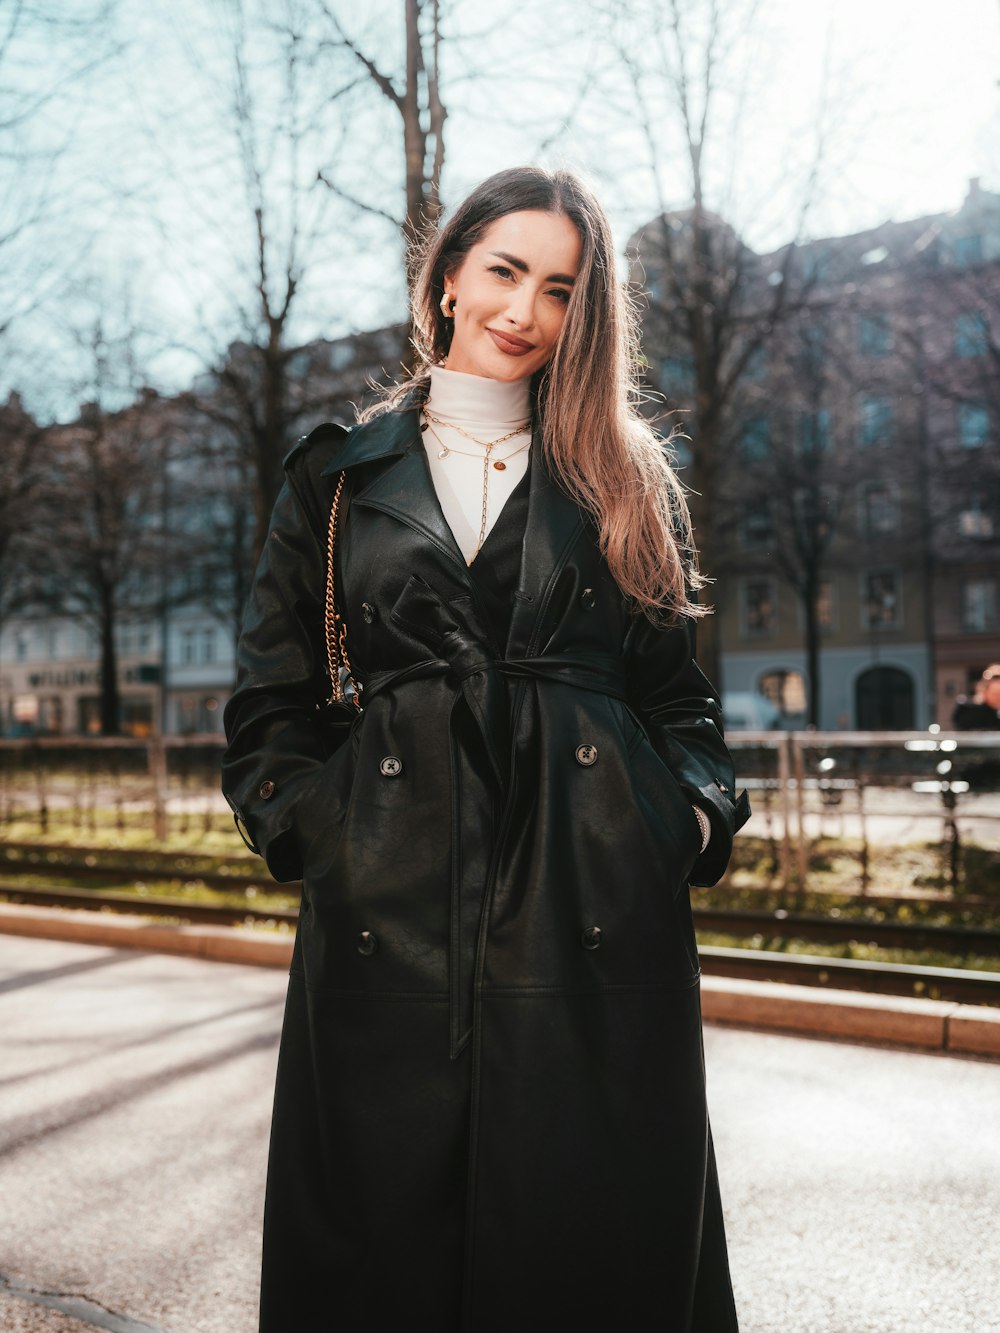 Eine Frau in einem schwarzen Mantel steht auf der Straße